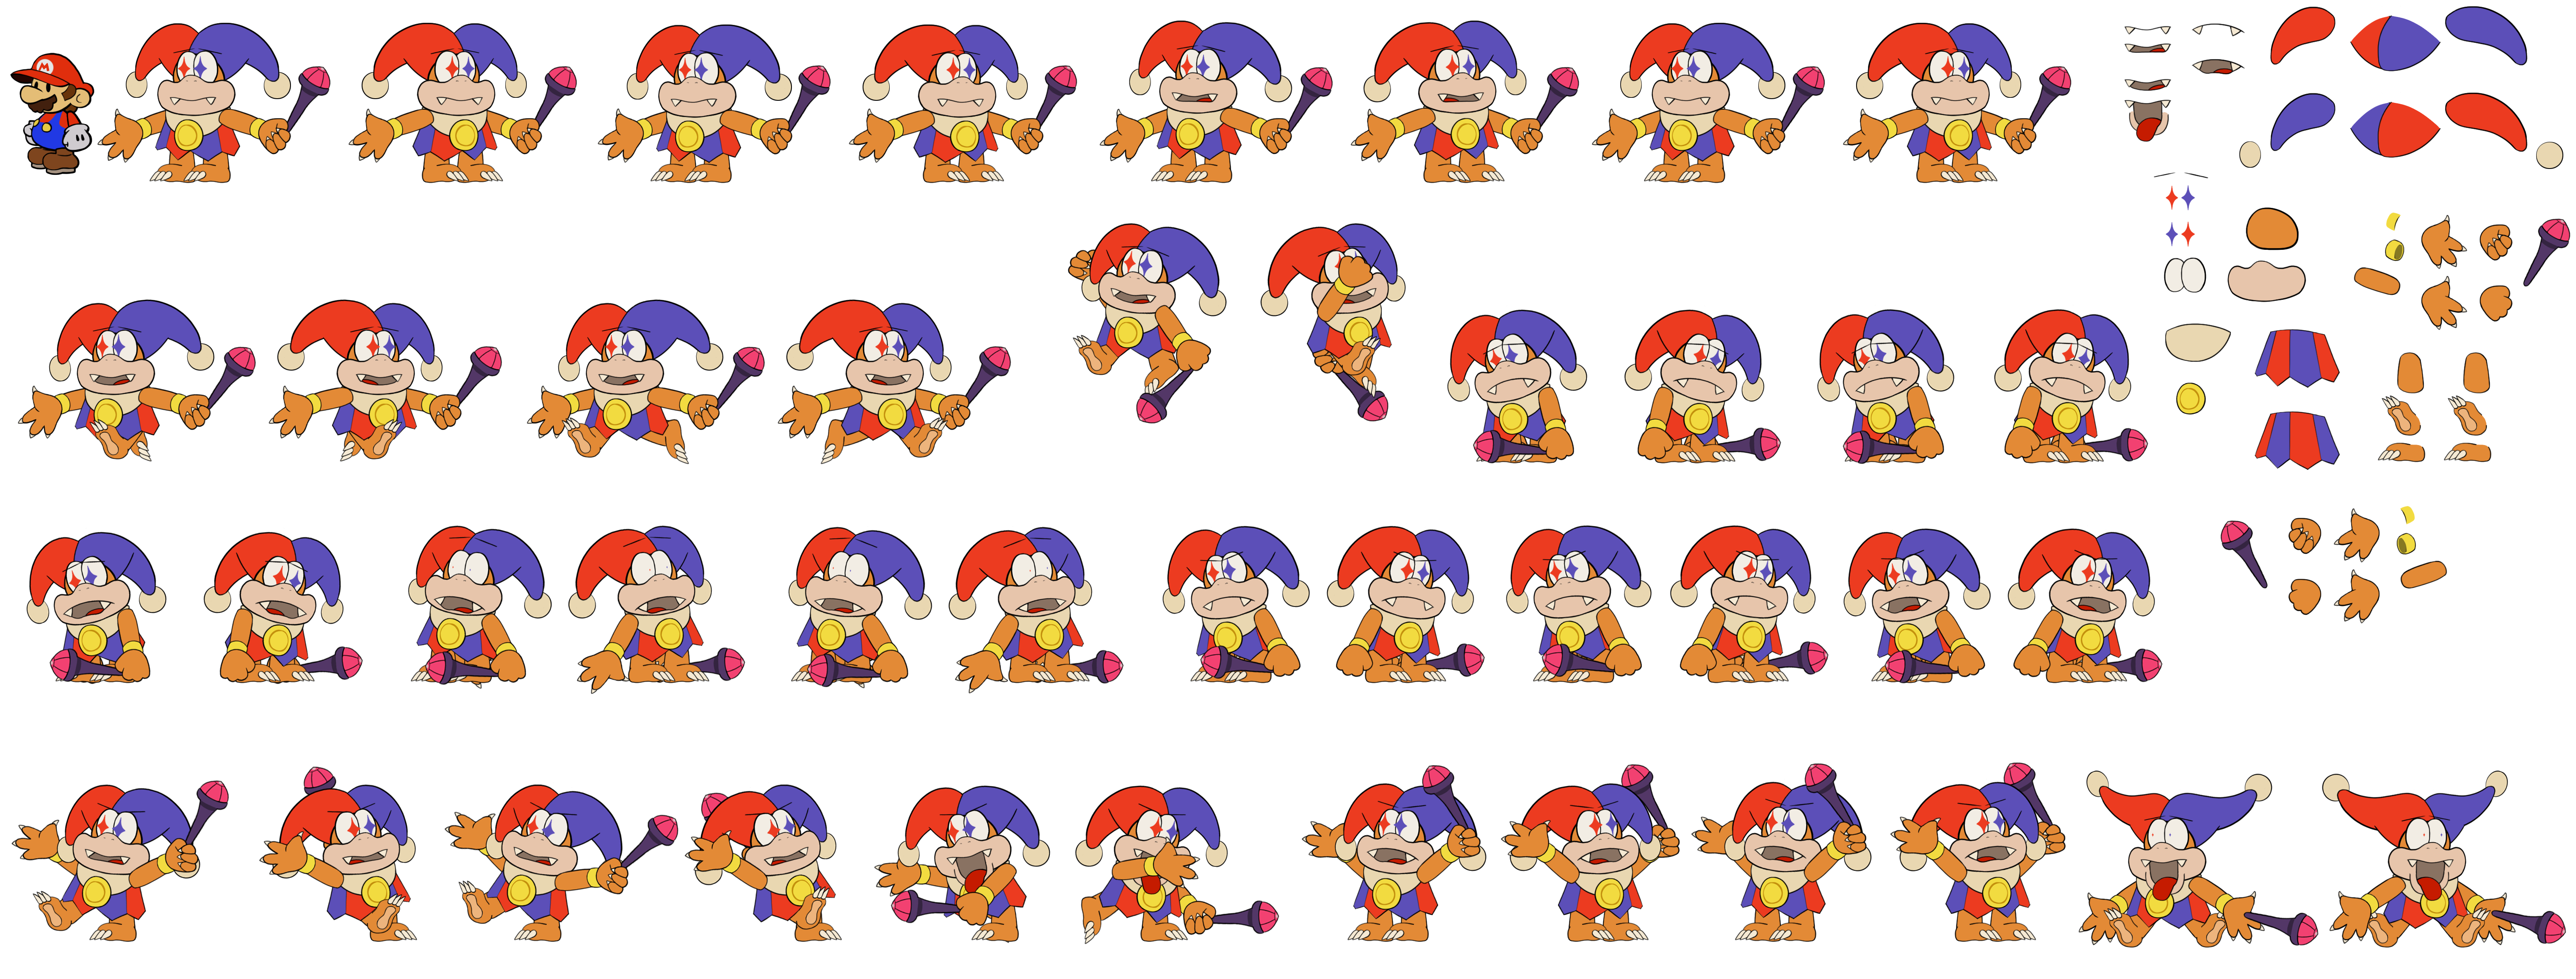 Mario Customs - Motley Bossblob (Paper Mario-Style)